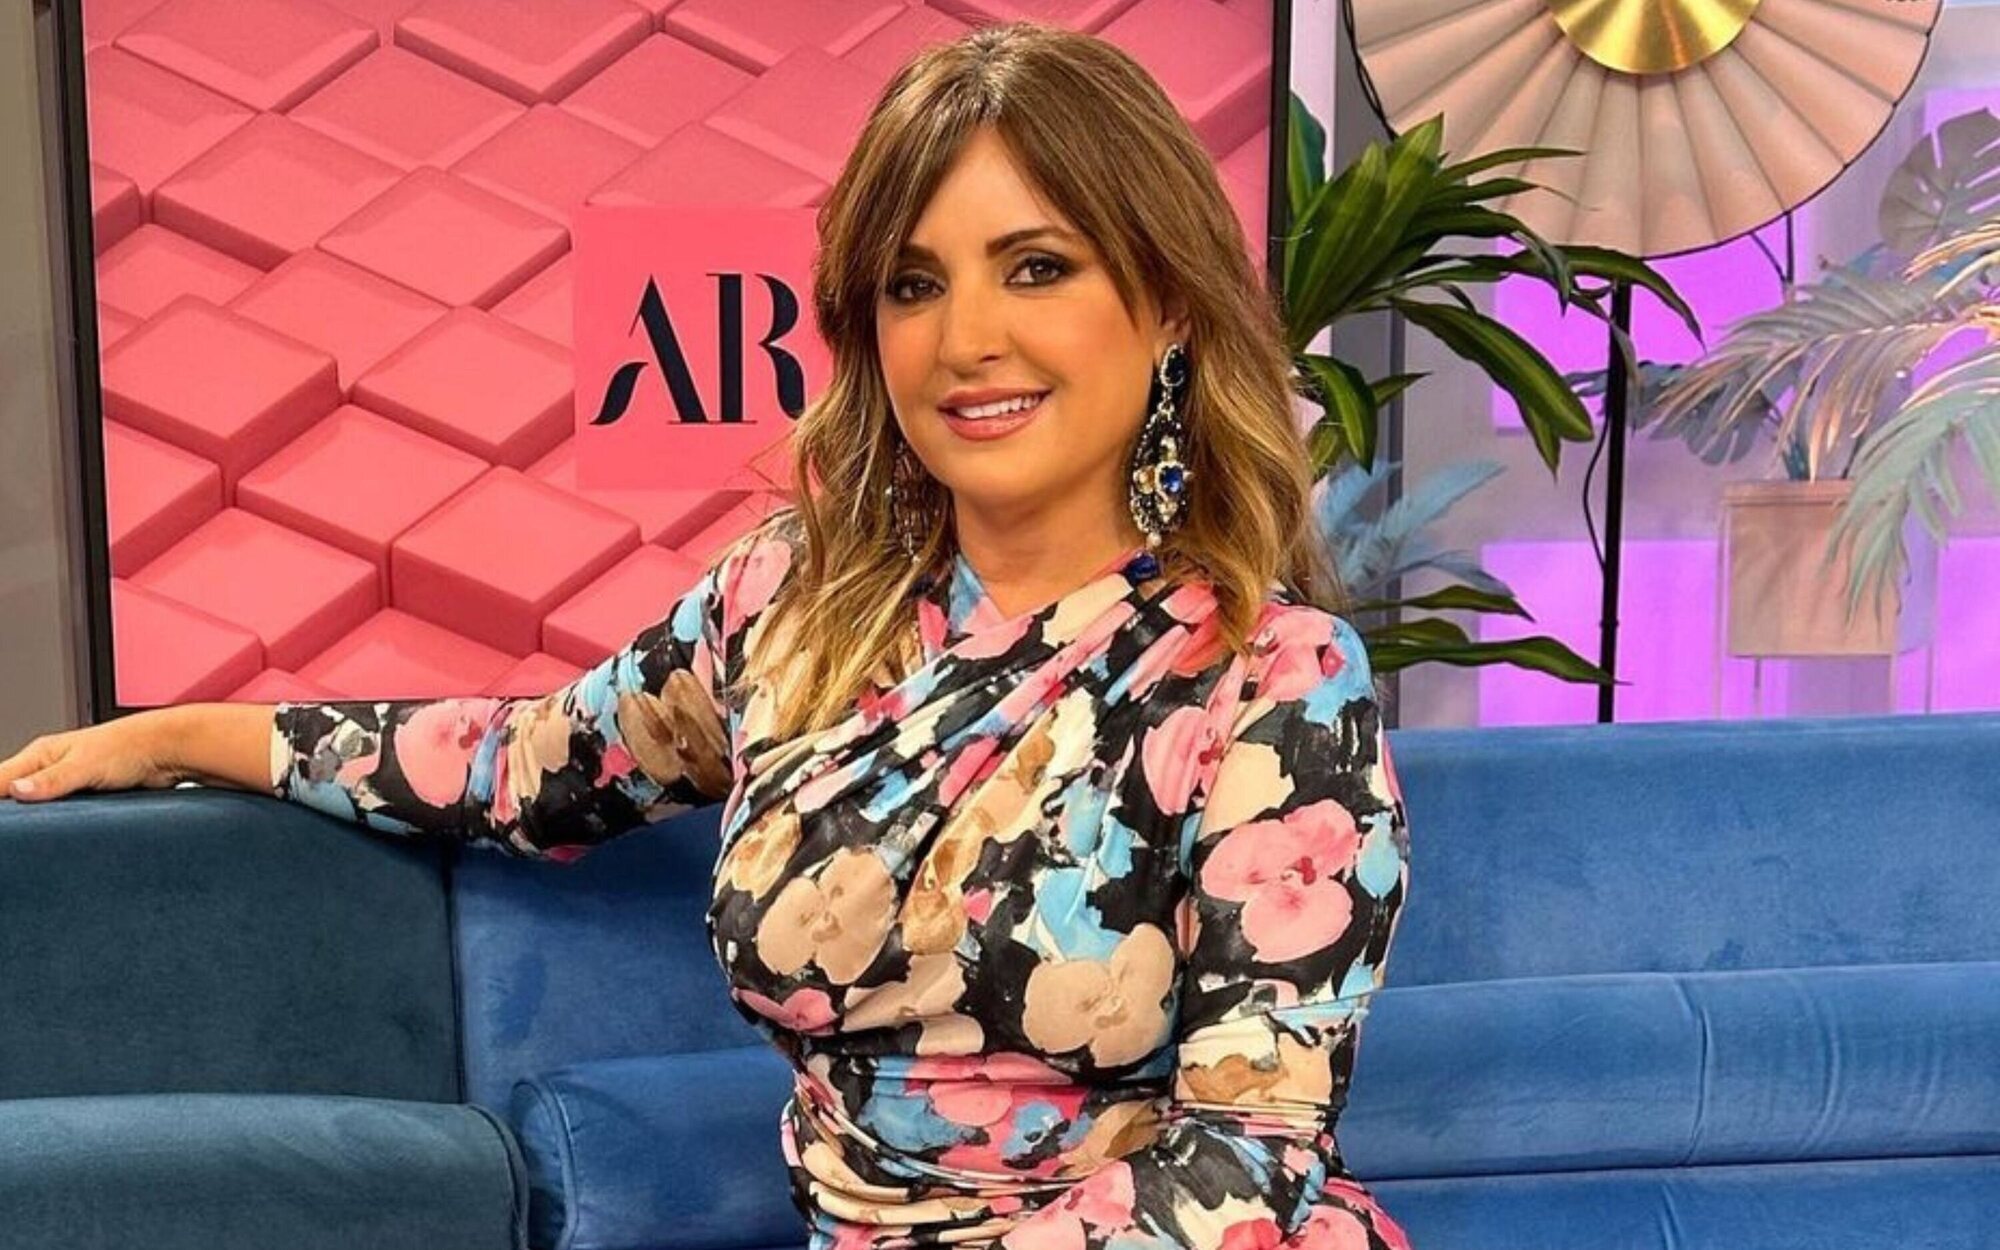 Antena 3 pesca en 'El programa de Ana Rosa' y ficha a Beatriz Cortázar, que deja Telecinco